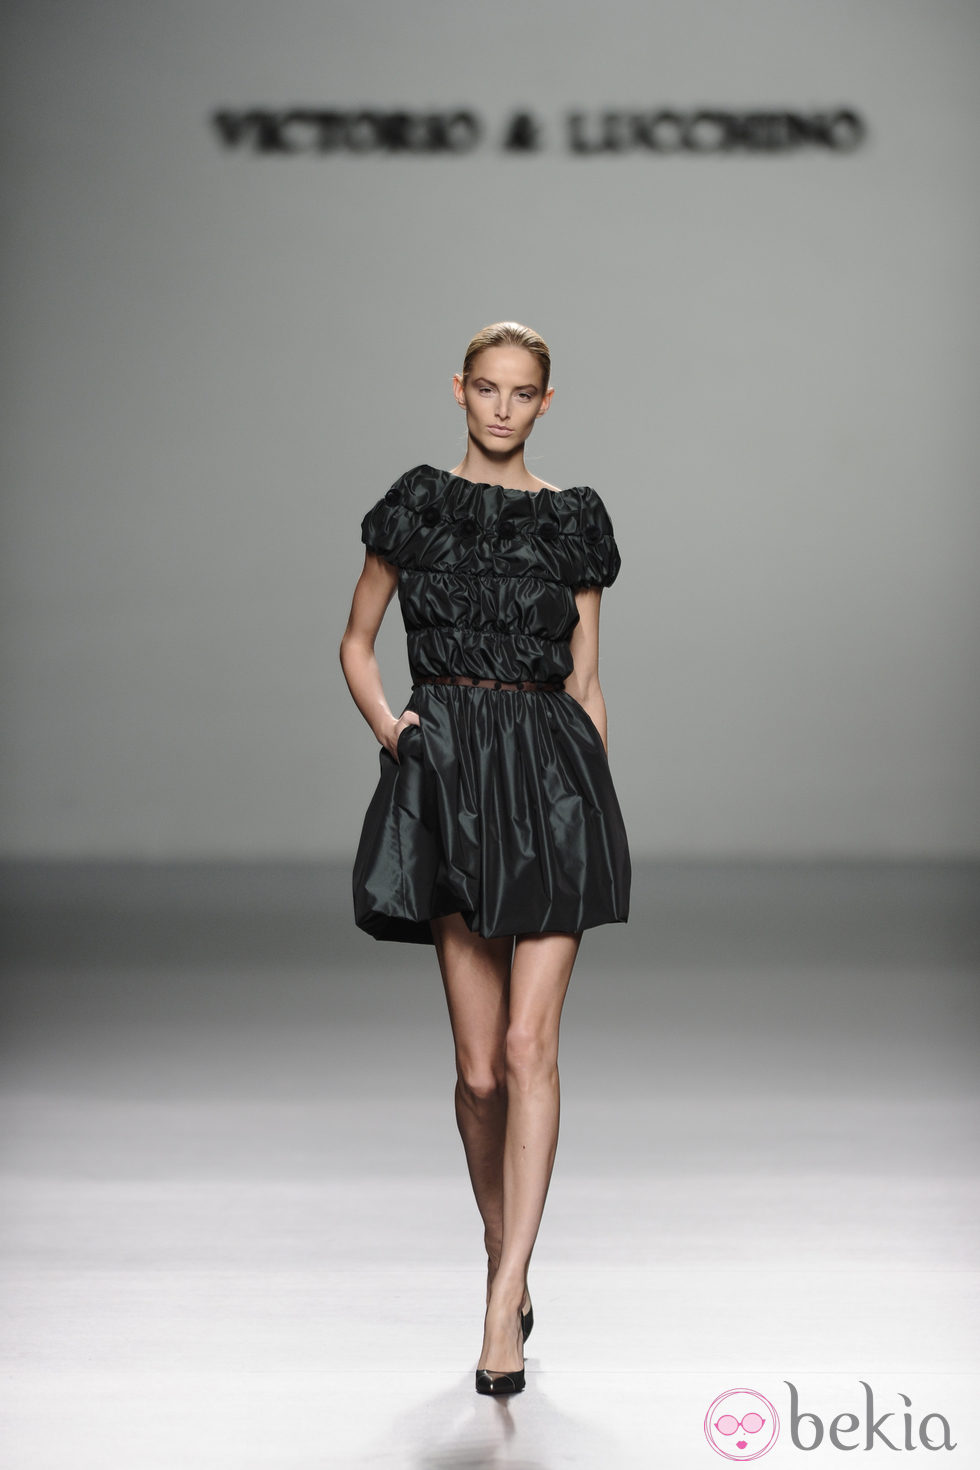 Vestido negro de cuero de la colección otoño/invierno 2013/2014 de Victorio y Lucchino en Madrid Fashion Week